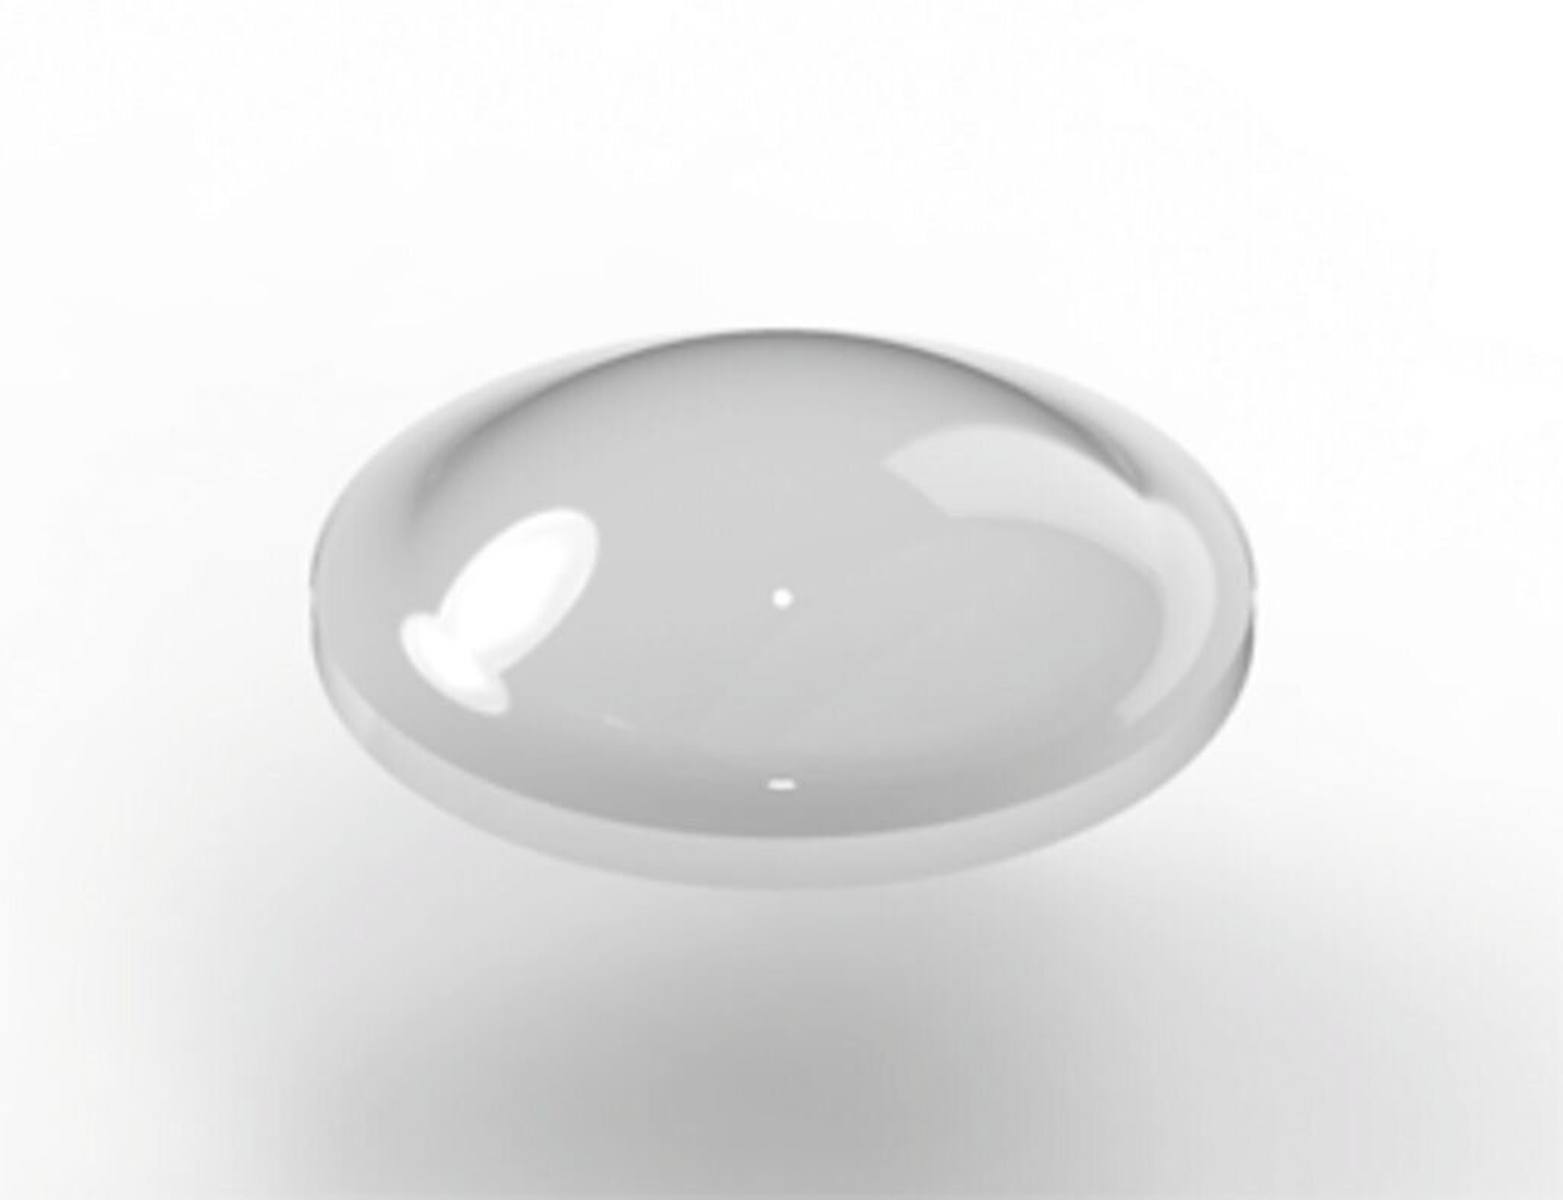 3M Bumpon SJ5302AL transparente l Anchura: 7,9 mm Altura: 2,2 mm "con protección UV